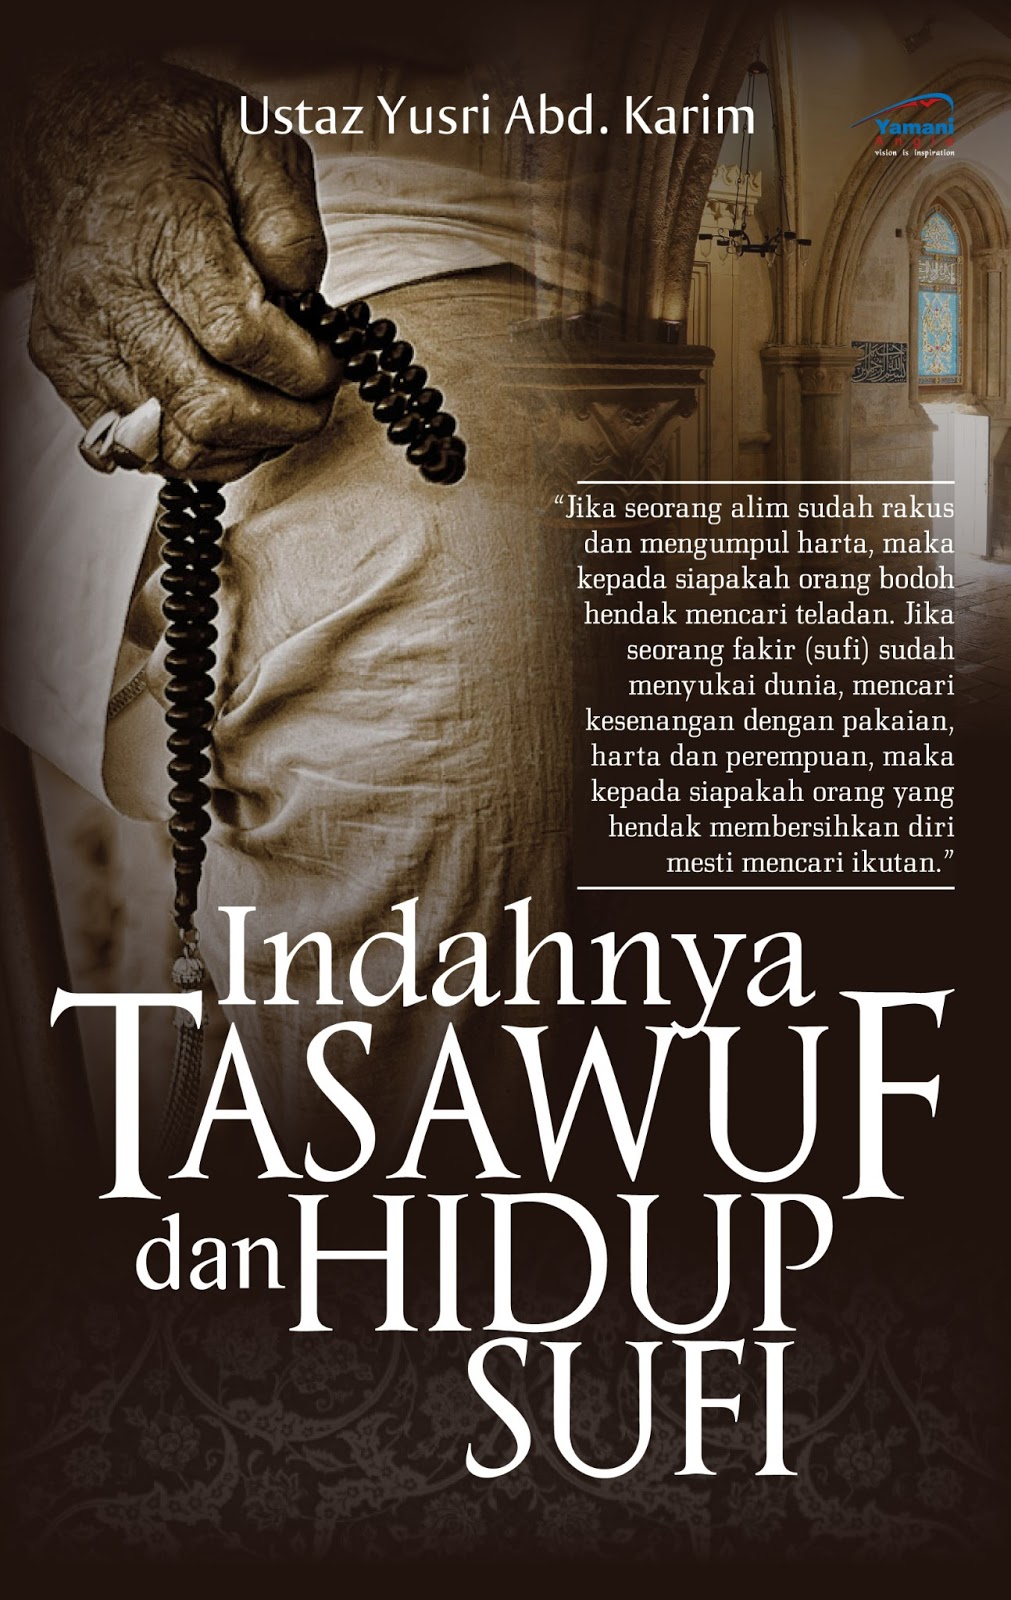 . Buku Indahnya Tasawuf dan Hidup Sufi (Ustaz Yusri Abd. Karim)